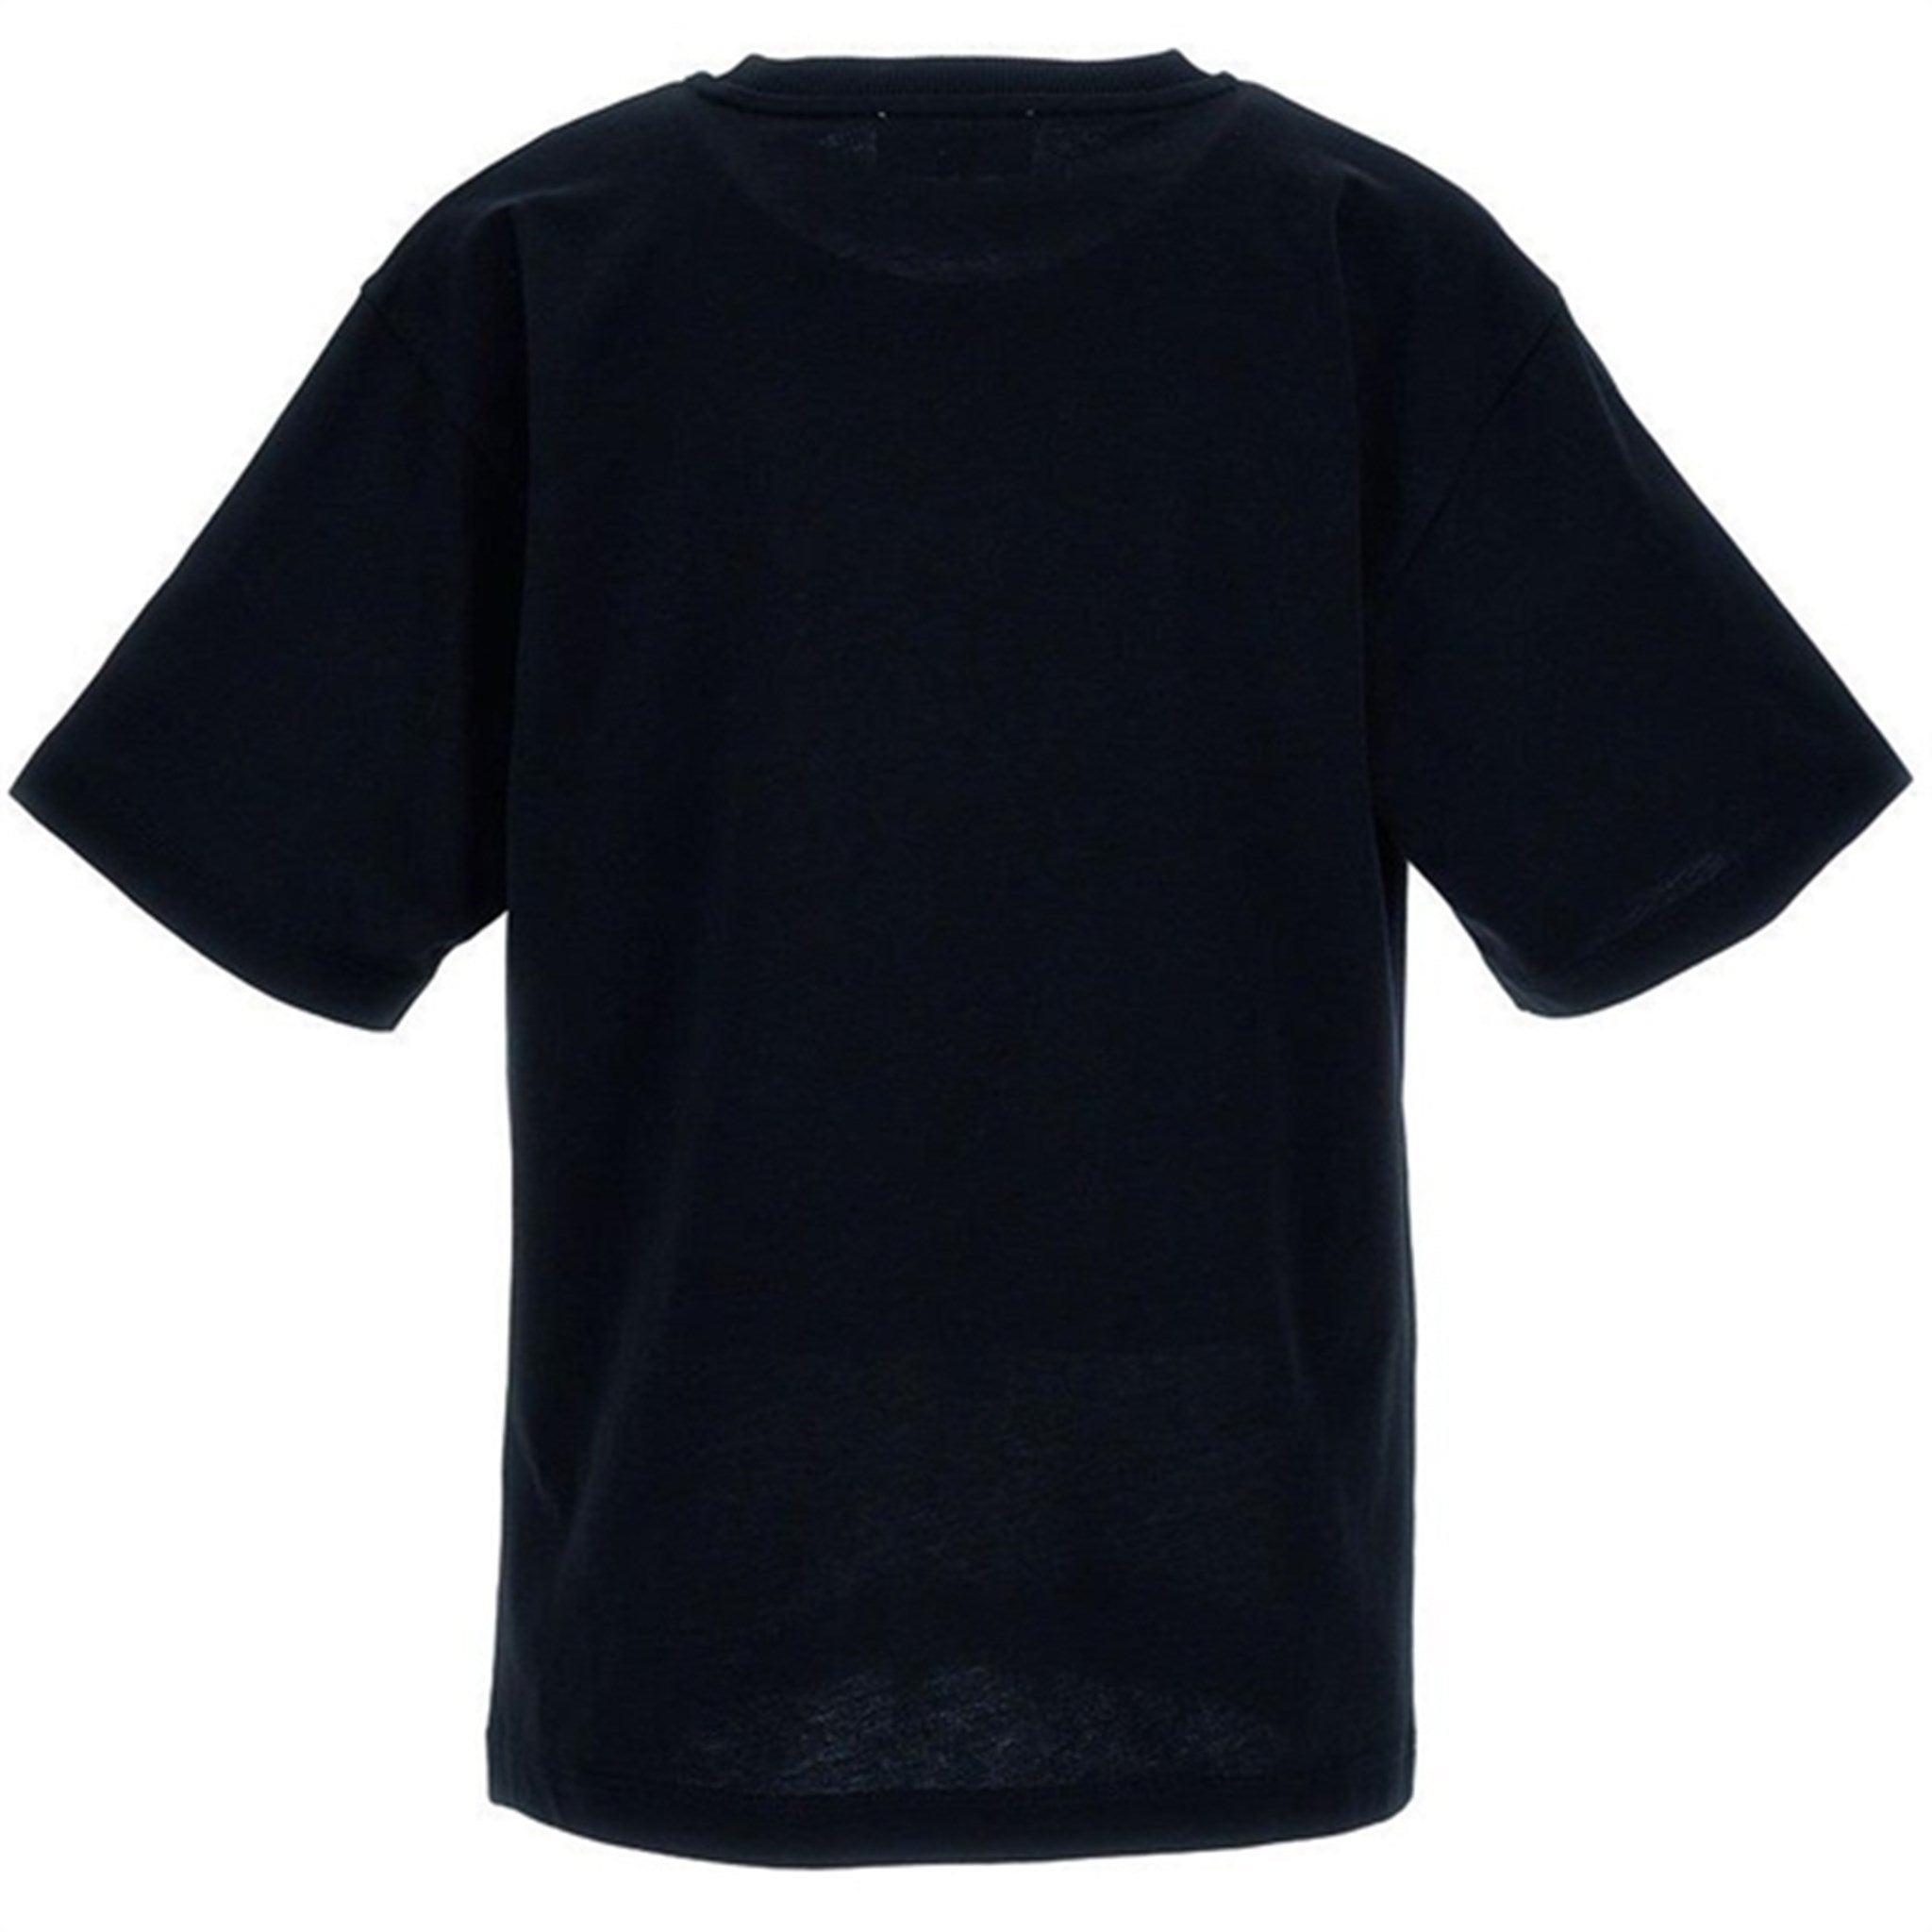 Moschino Black T-Shirt Maxi 3